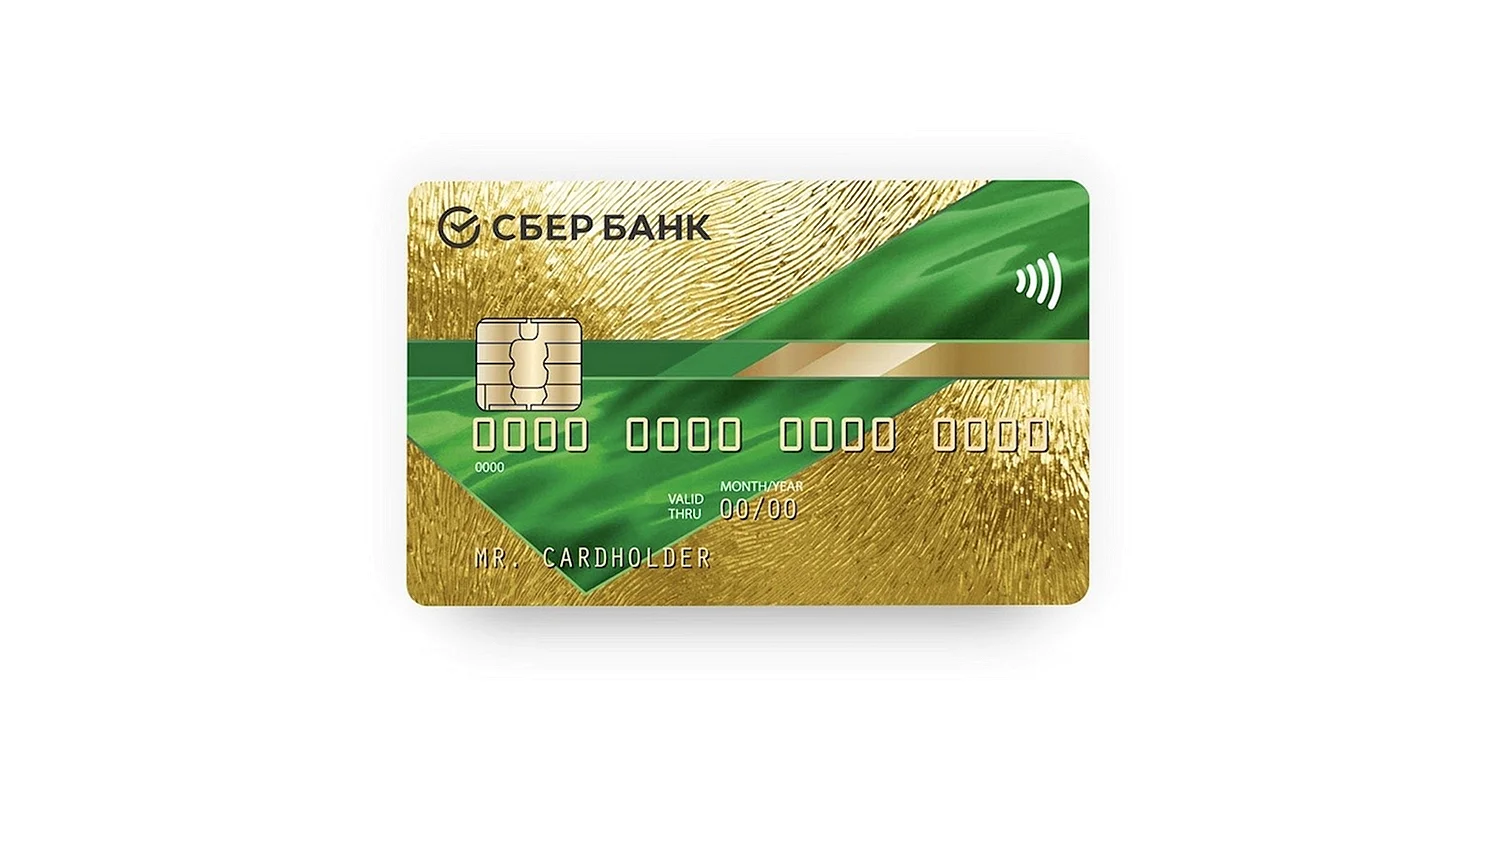 Золотая кредитная карта Сбербанка